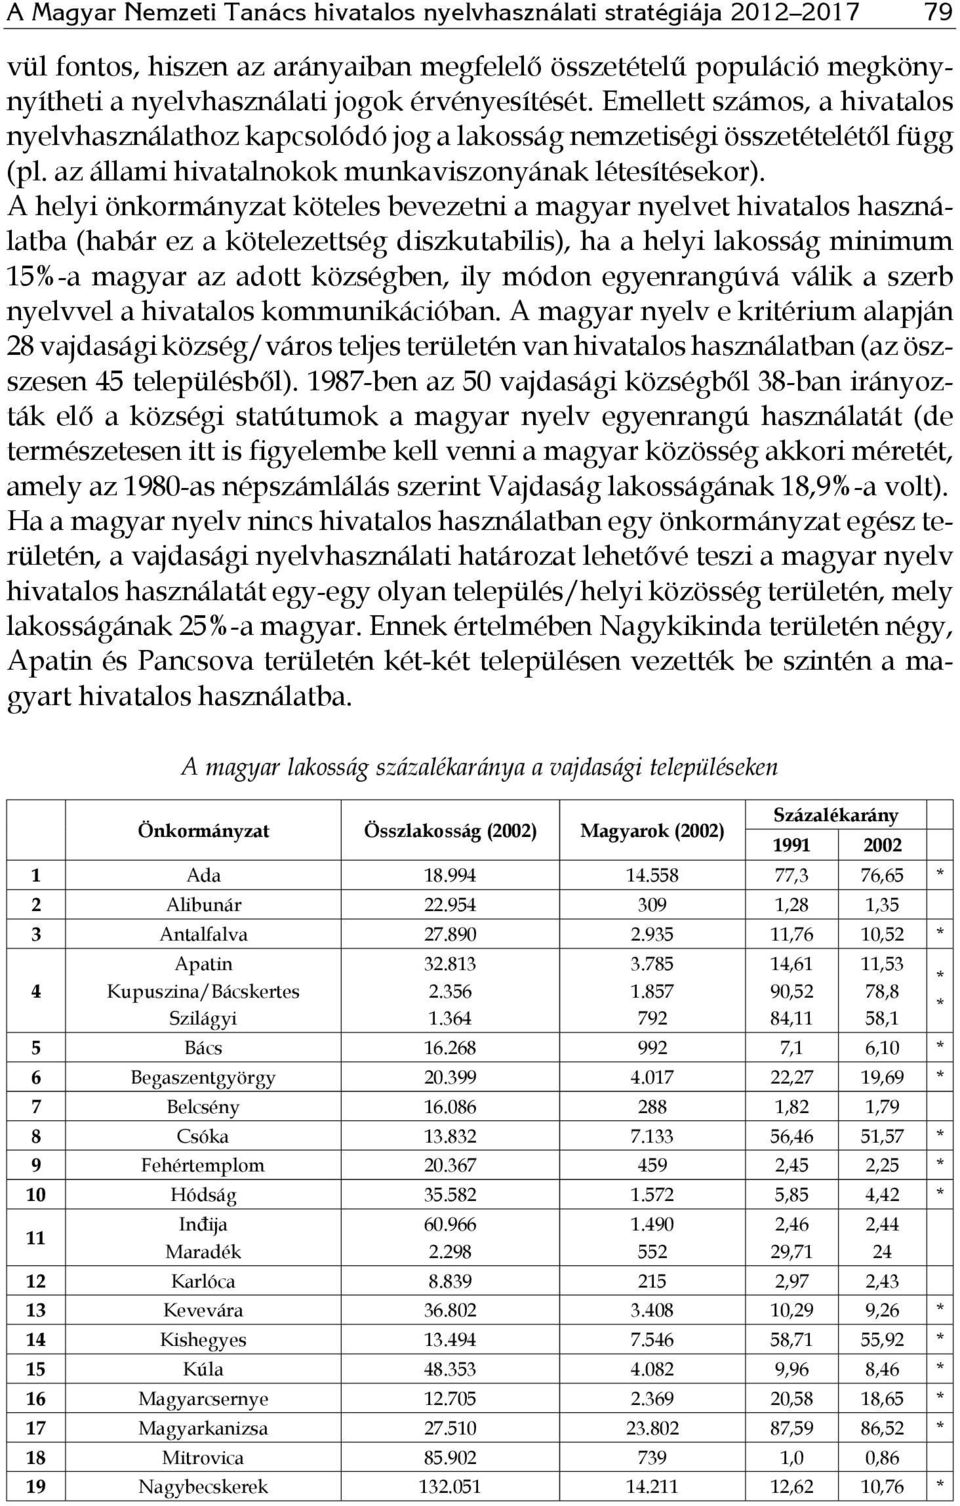 A helyi önkormányzat köteles bevezetni a magyar nyelvet hivatalos használatba (habár ez a kötelezettség diszkutabilis), ha a helyi lakosság minimum 15%-a magyar az adott községben, ily módon